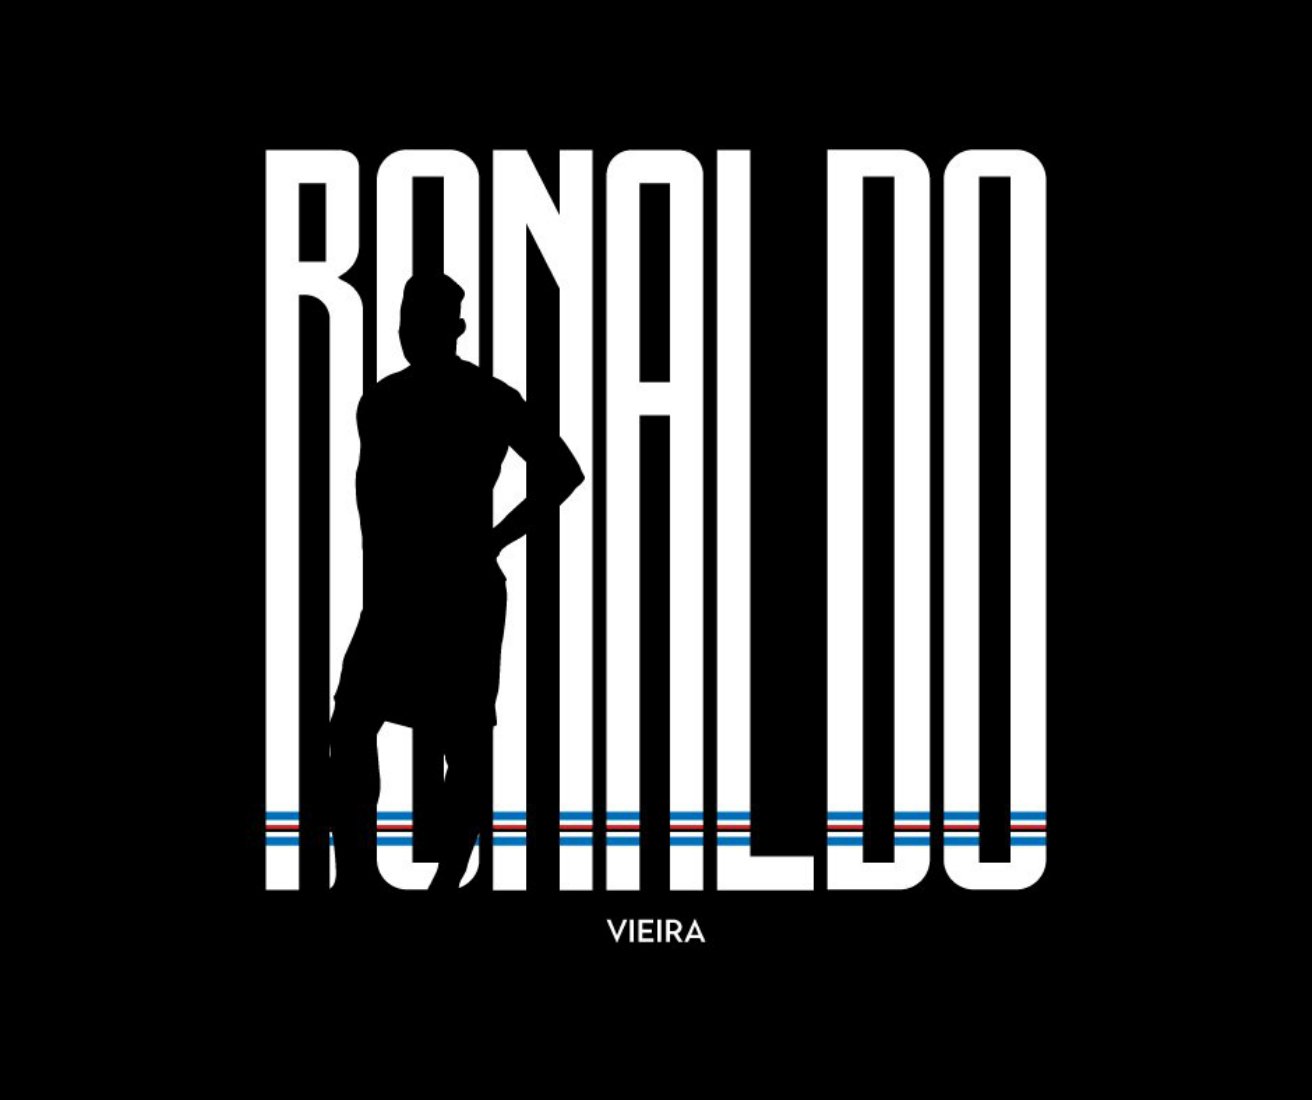 La Sampdoria no és menys que la Juventus i també fitxa Ronaldo